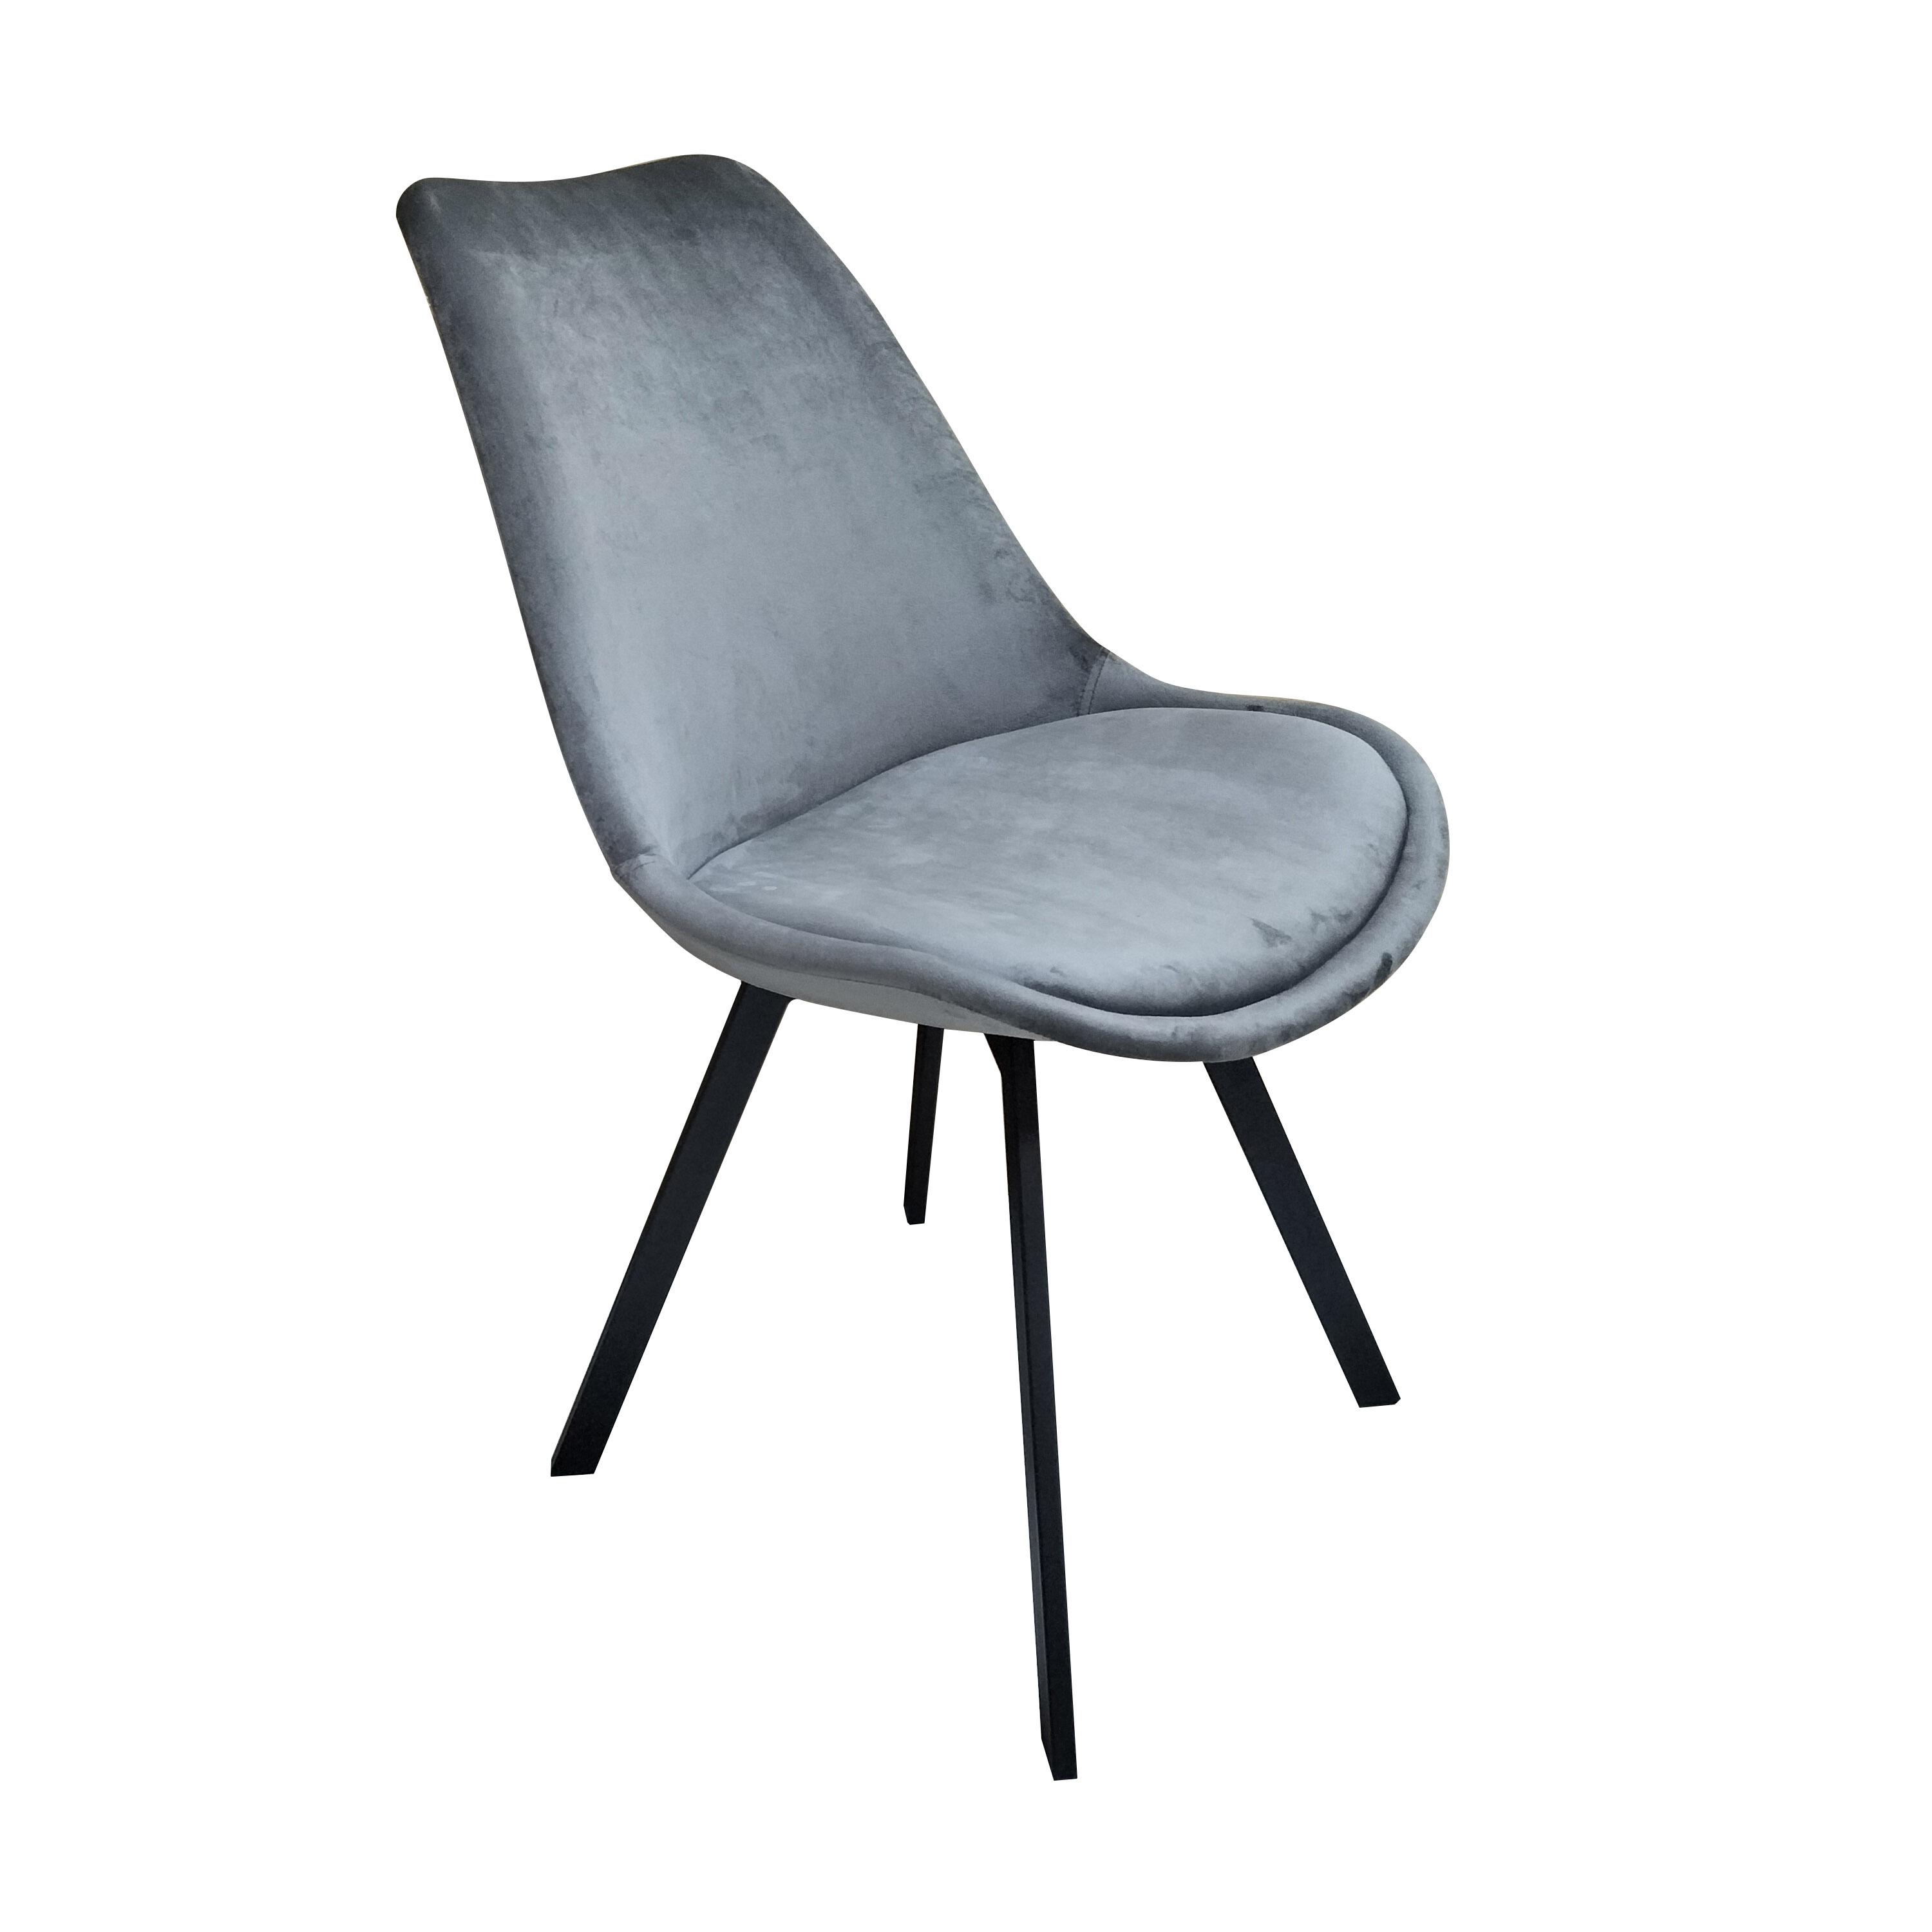 Židle Ze Sametu Mia - Tmavěšedá - černá/tmavě šedá, Moderní, kov/textil (45/84/55cm) - P & B